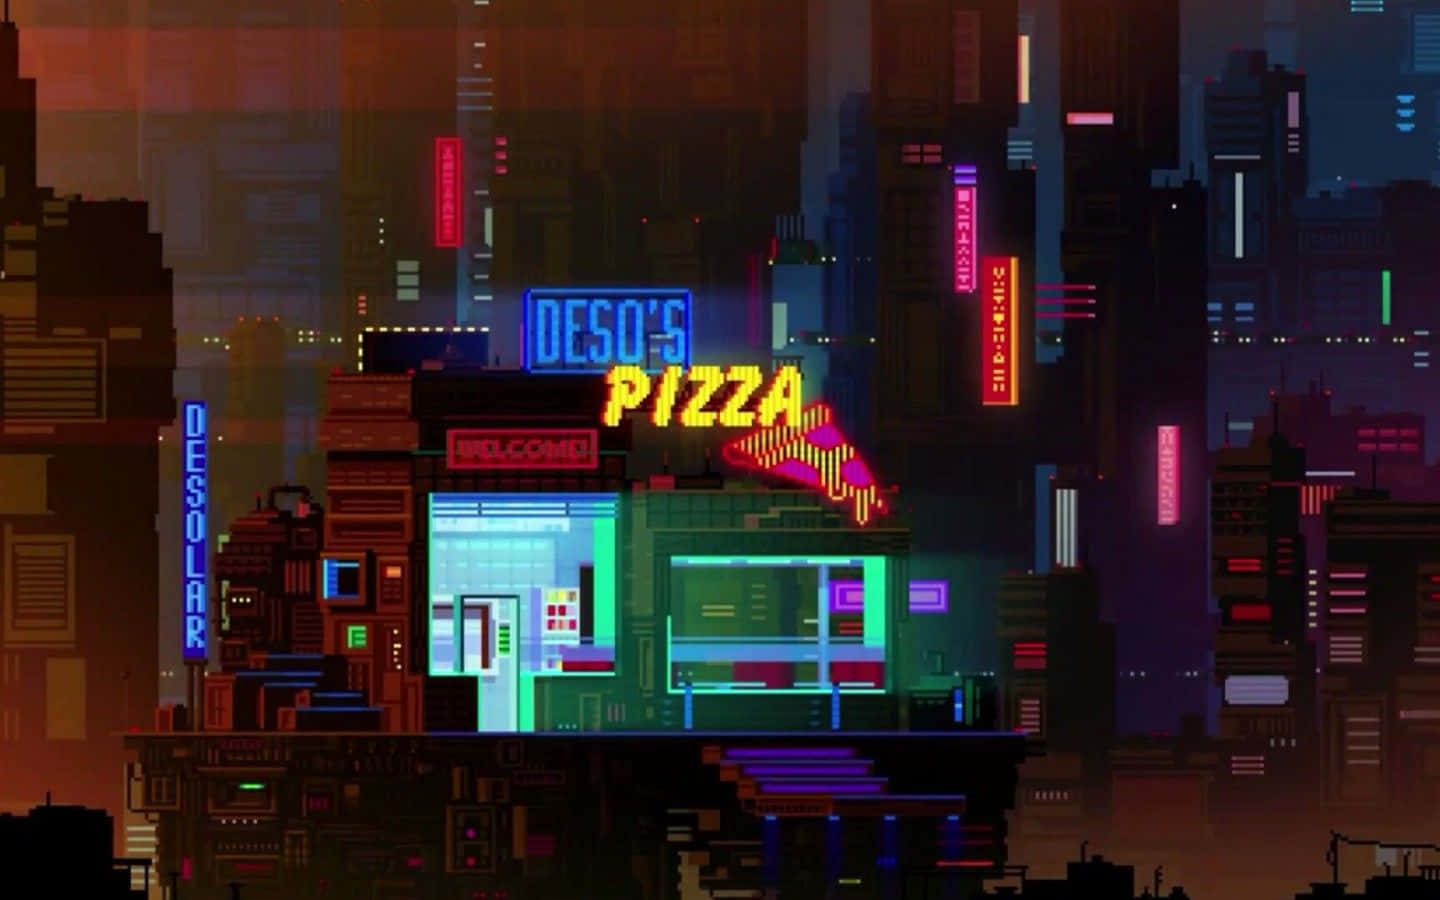 Cyberpunkpizzabistro In Der Nacht, Pixel Art Wallpaper